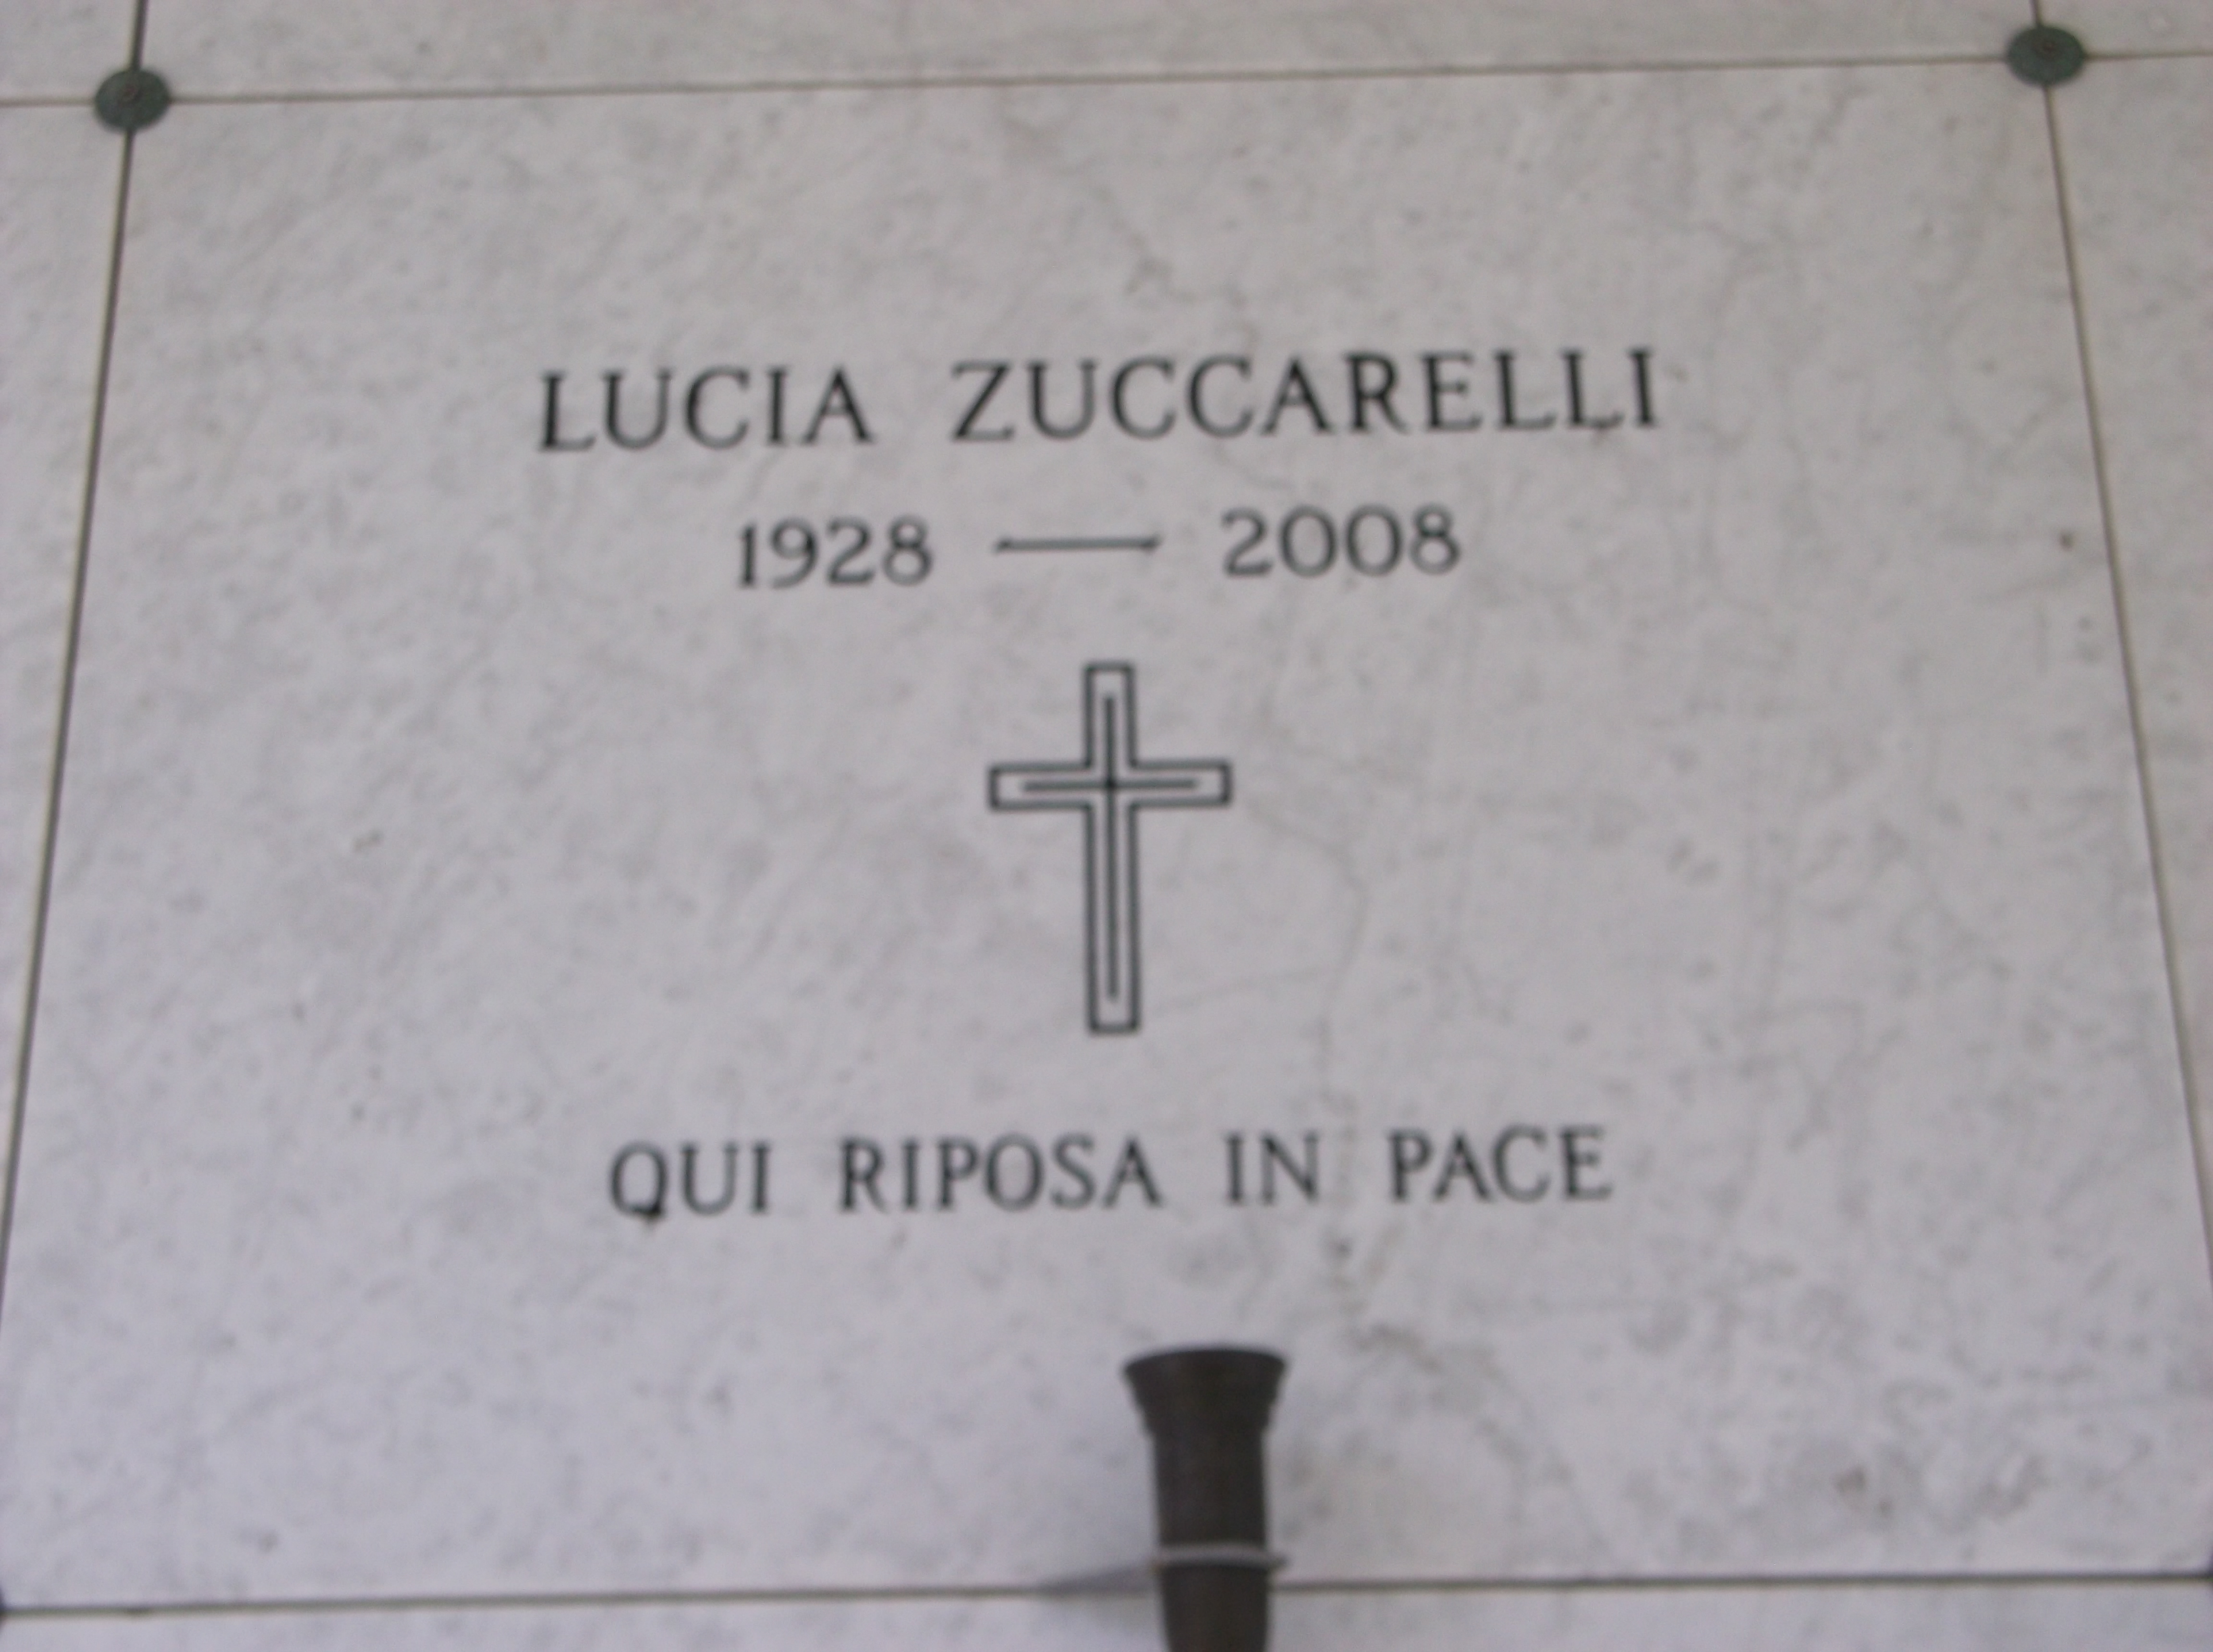 Lucia Zuccarelli